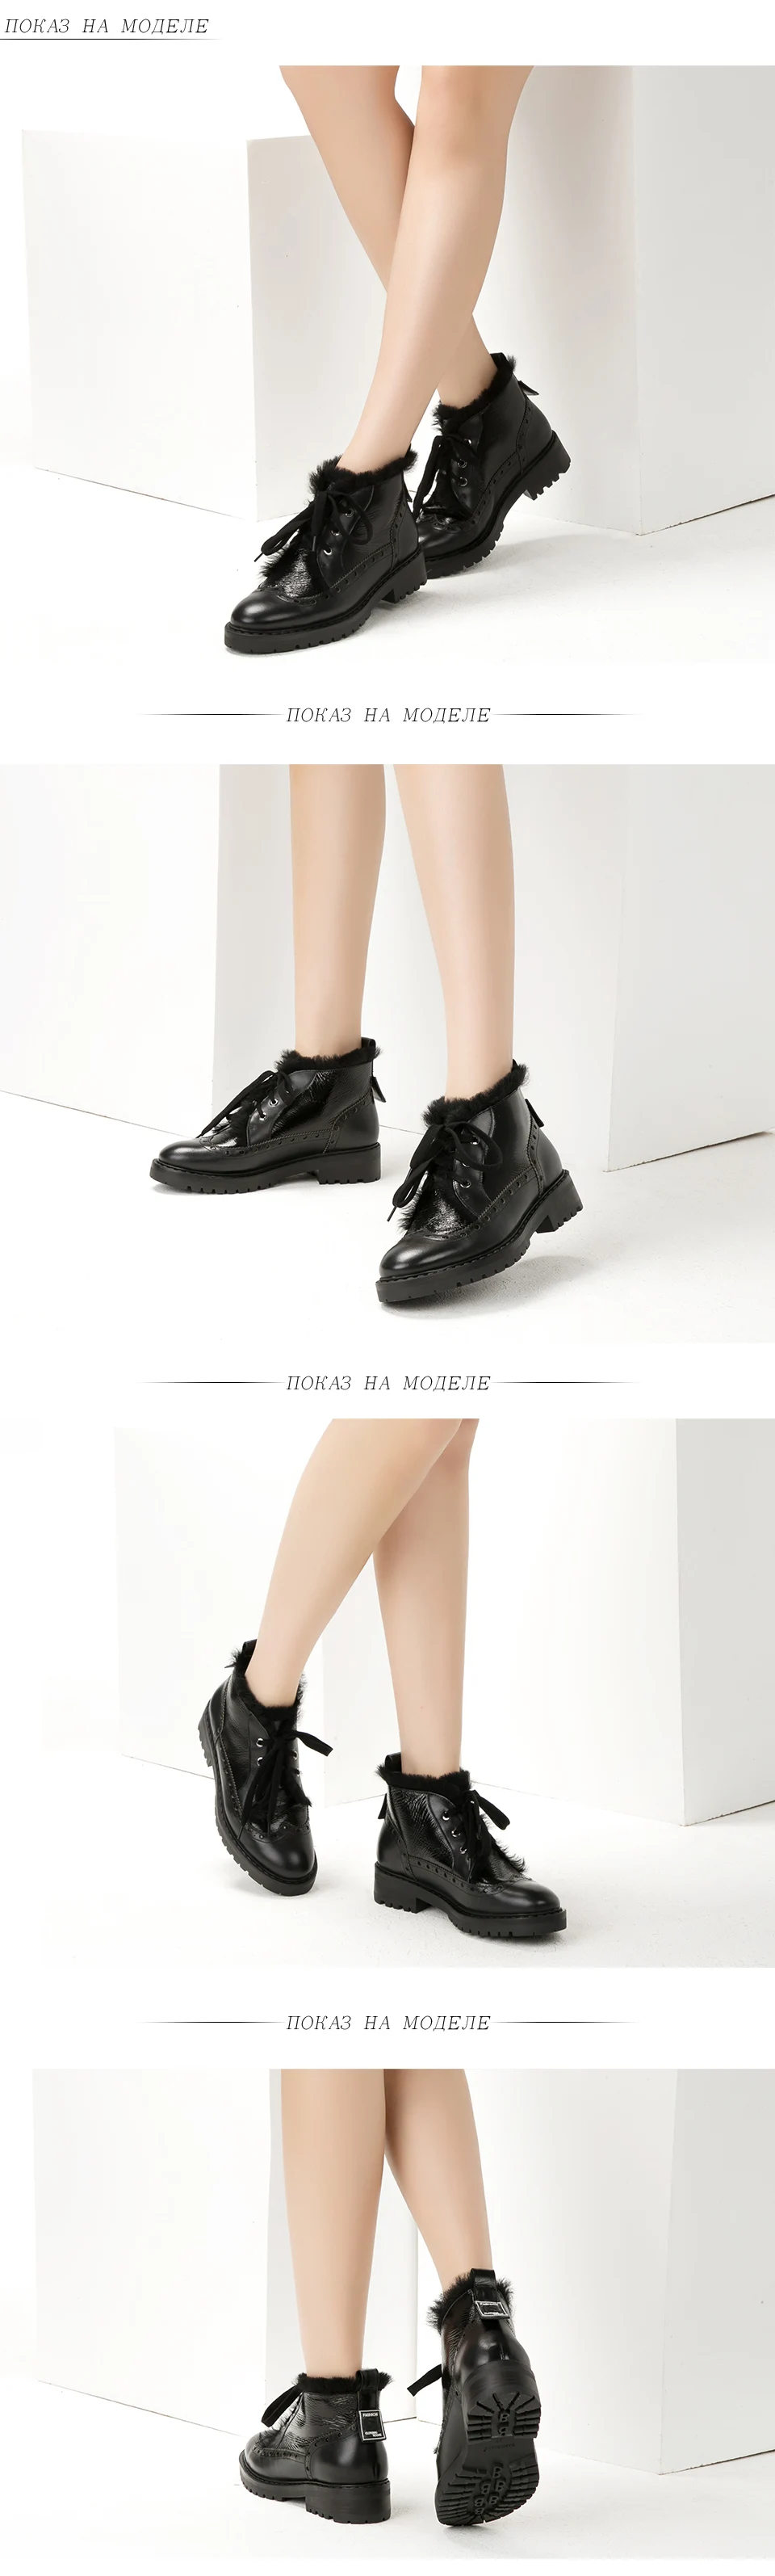 BASSIRIANA новые зимние женские туфли черные натуральные шерстяные теплые кожаные кружева круглые плоские туфли